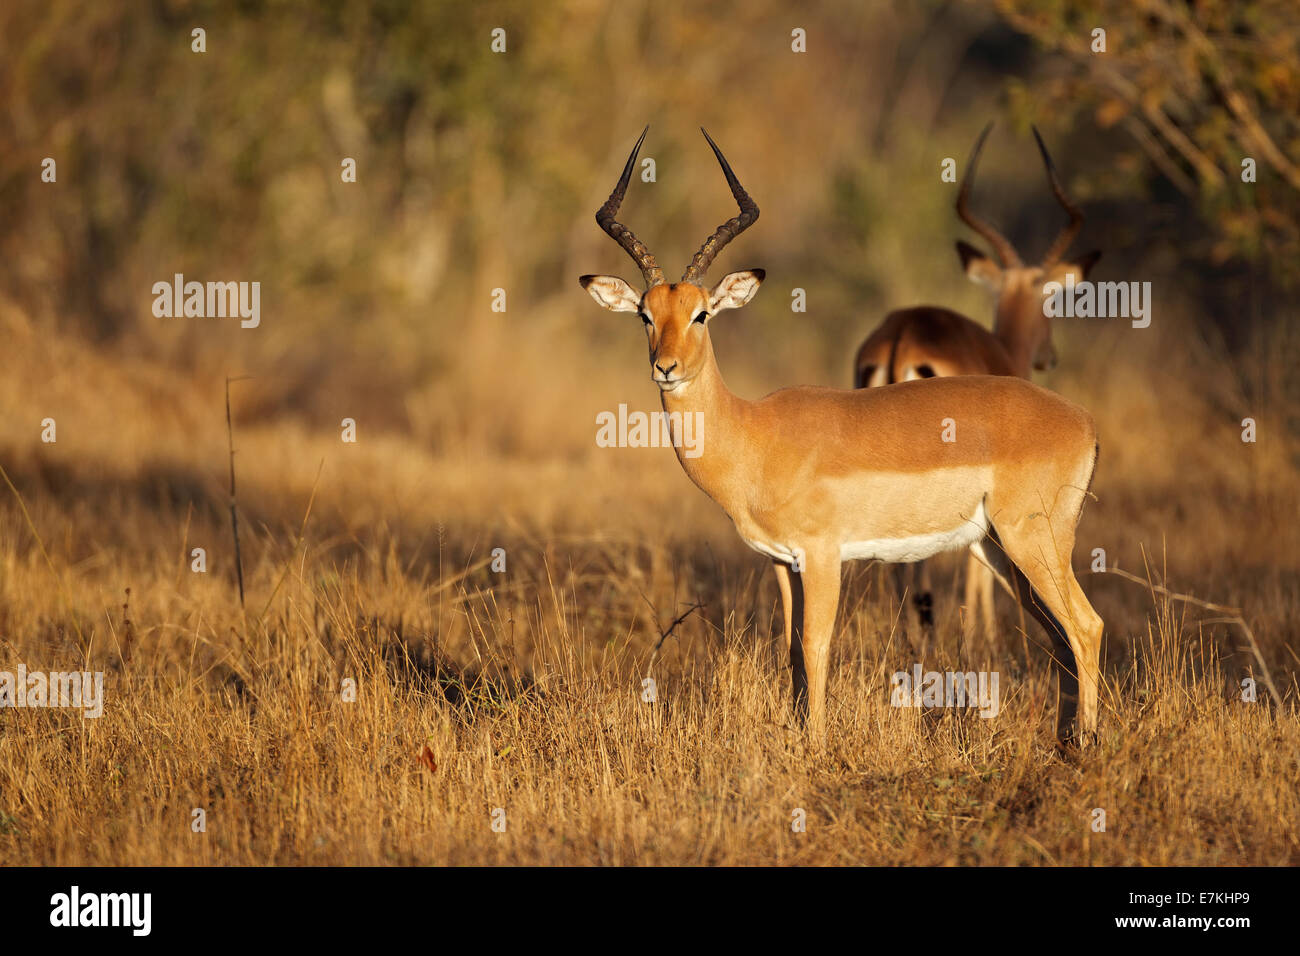 Un macho de antílope impala (Aepyceros melampus) en su hábitat natural, Sudáfrica Foto de stock